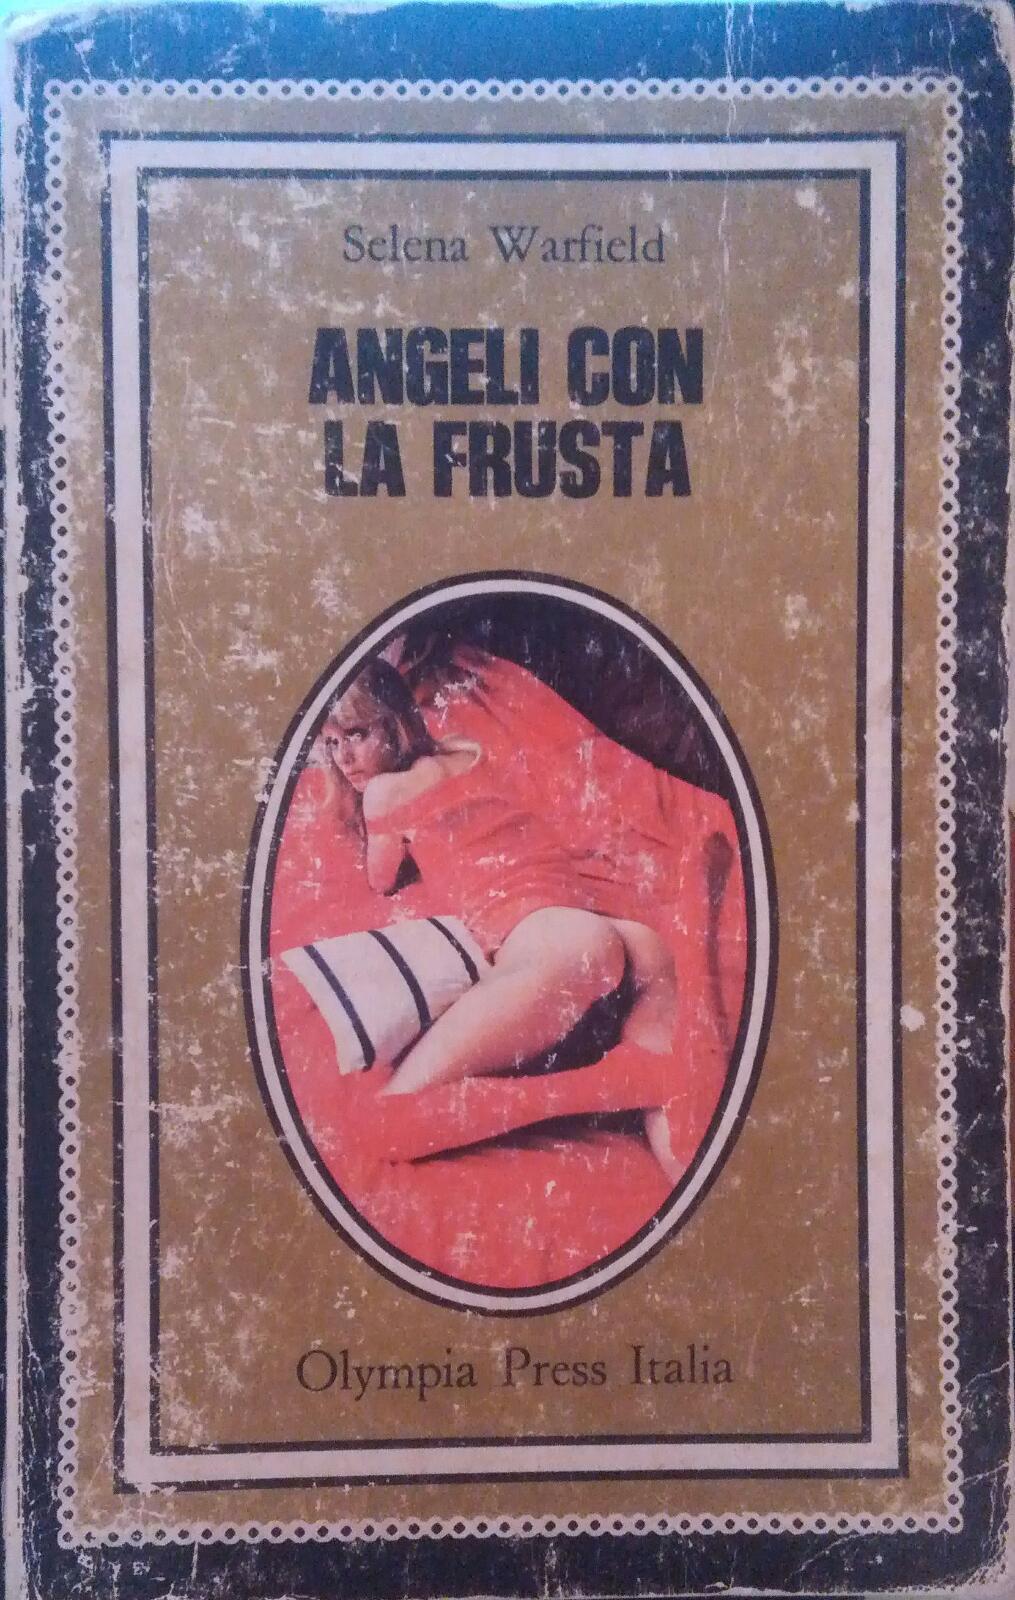 Angeli con la frusta- Selena Warfield,1979,Olympia Press - S